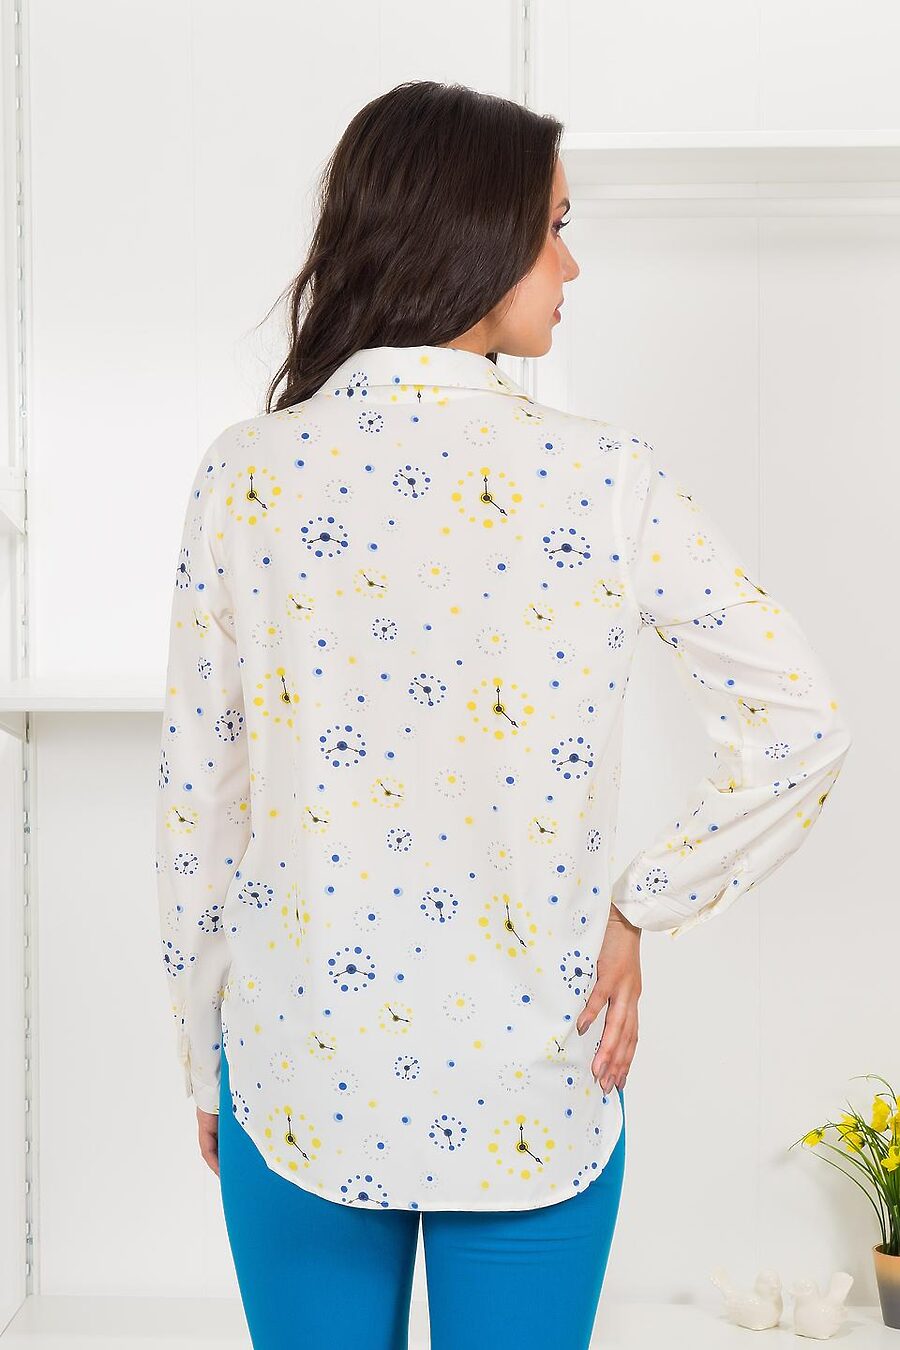 Рубашка  для женщин BRASLAVA 796397 купить оптом от производителя. Совместная покупка женской одежды в OptMoyo